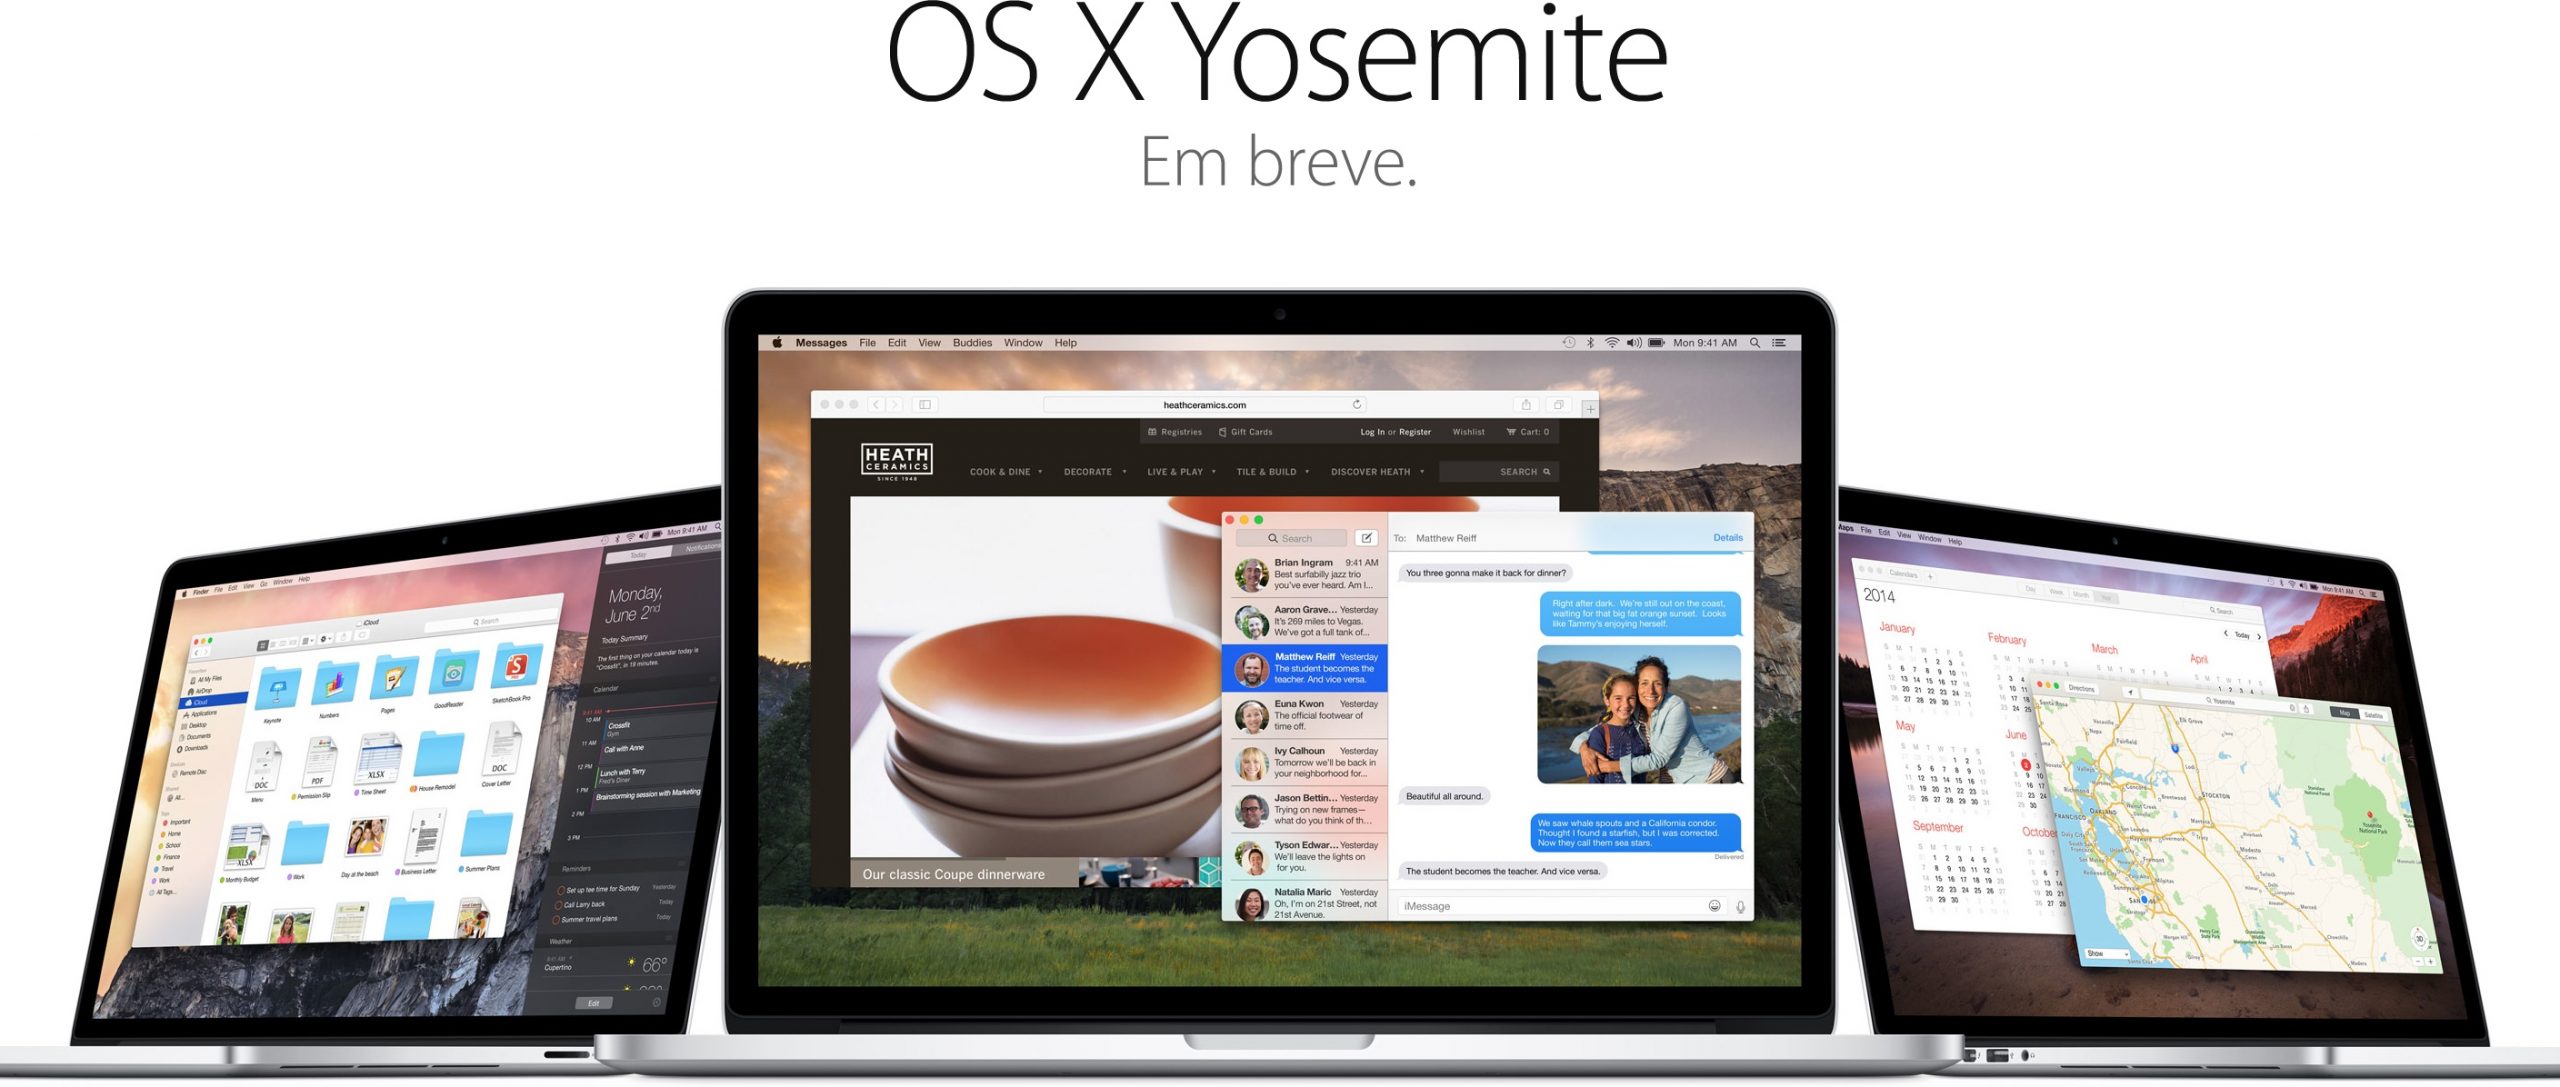 Kuulujutud: “iWatch” ja OS X Yosemite oktoobris;  Uus võrkkesta ekraaniga Mac 2014. aastal